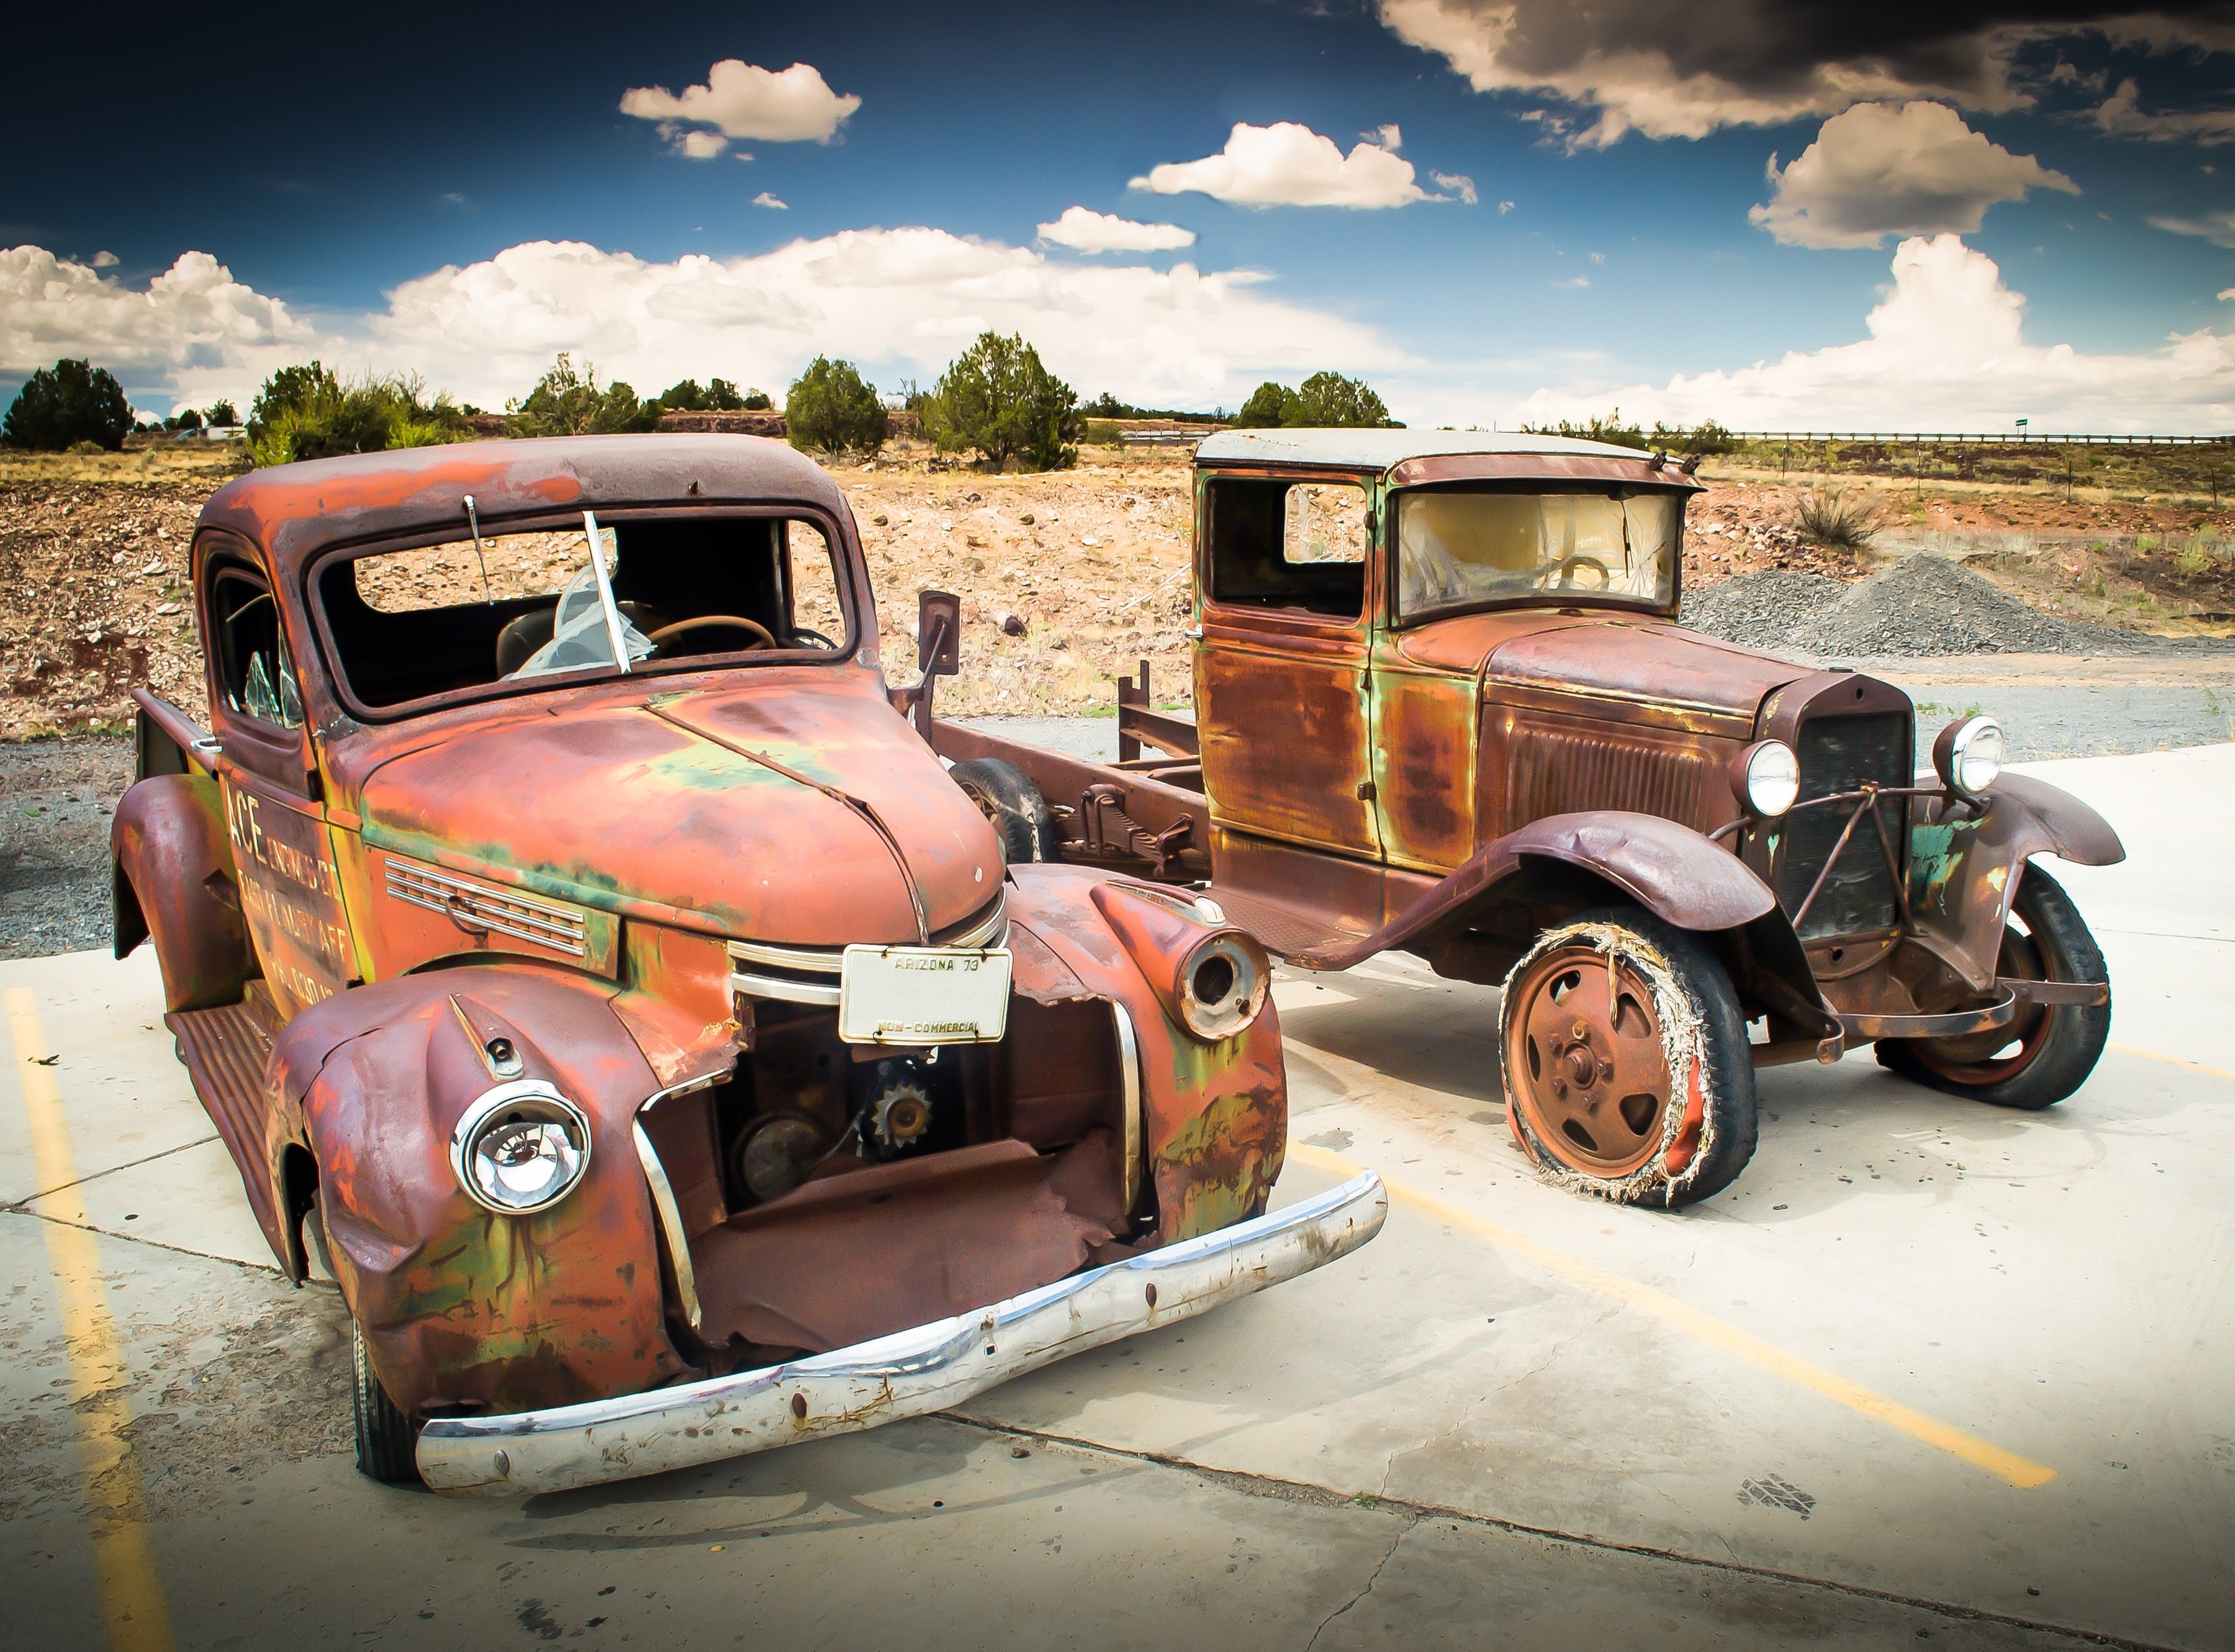 PAPERMOON Fototapete "Abandoned Old Cars" Tapeten Gr. B/L: 5 m x 2,8 m, Bahnen: 10 St., bunt (mehrfarbig) Fototapeten